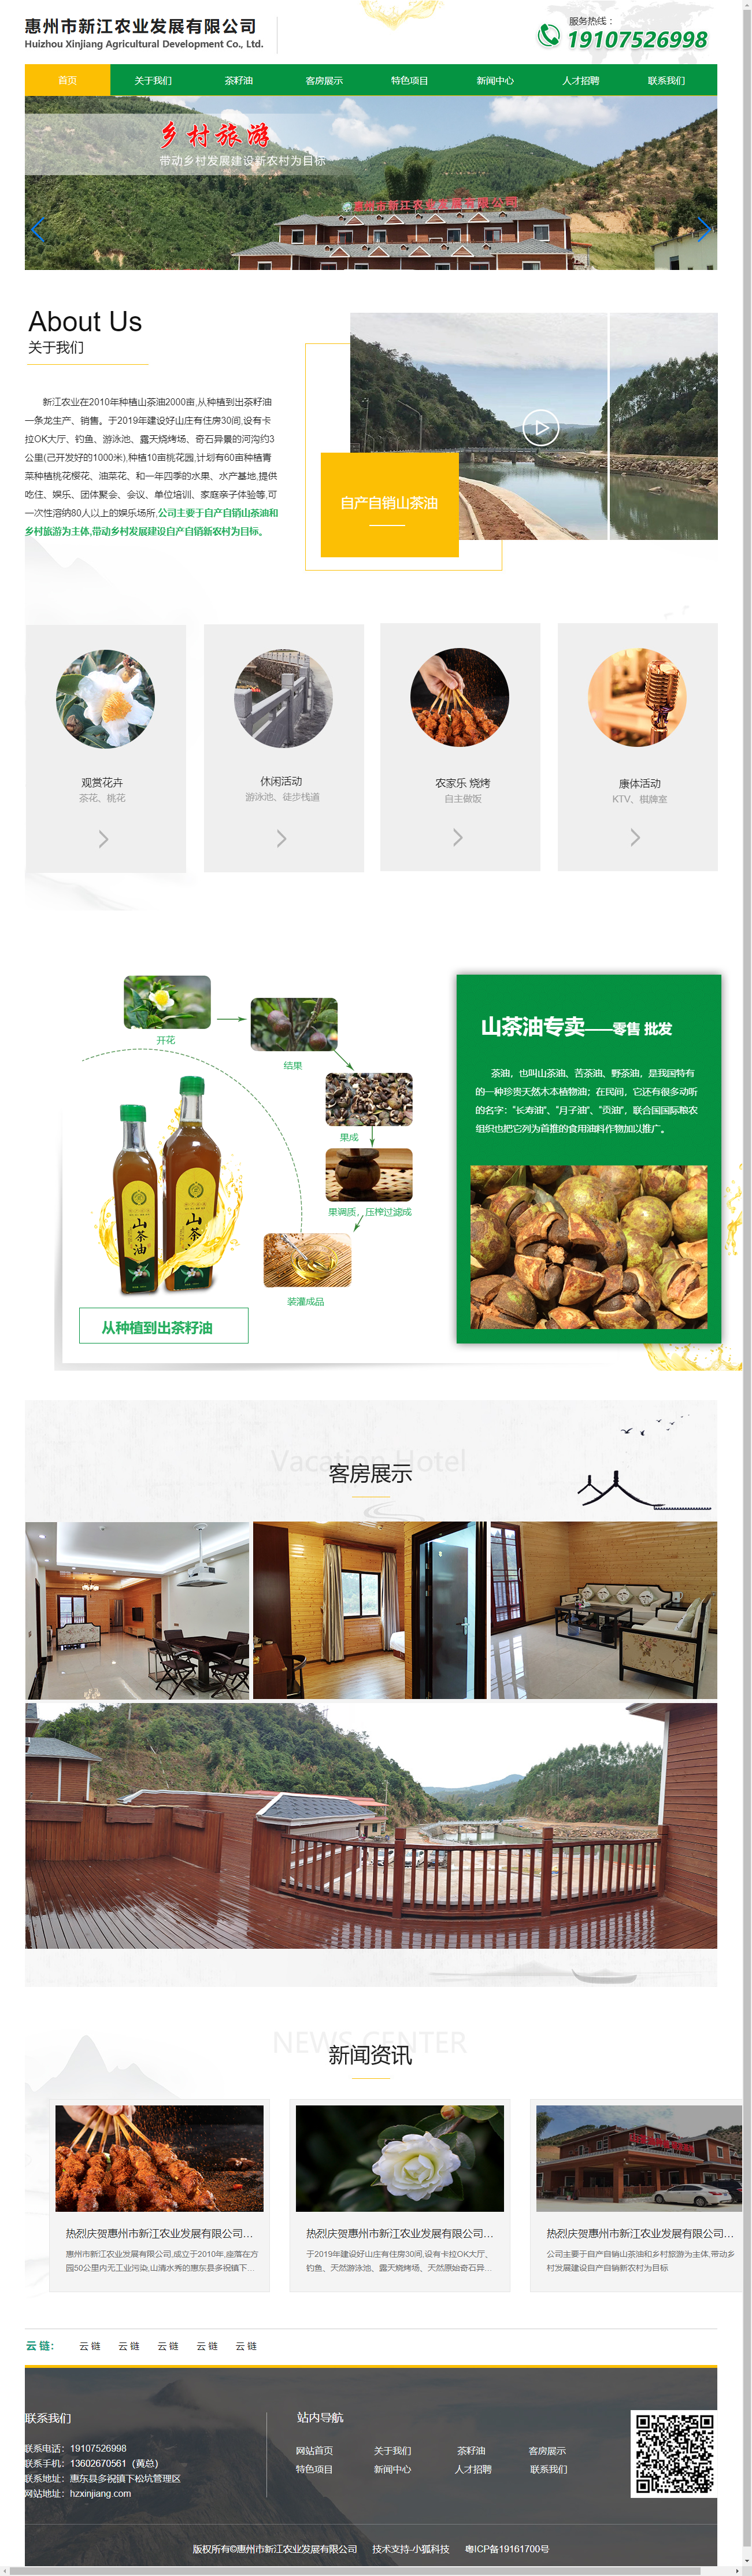 惠州市新江农业发展有限公司网站案例